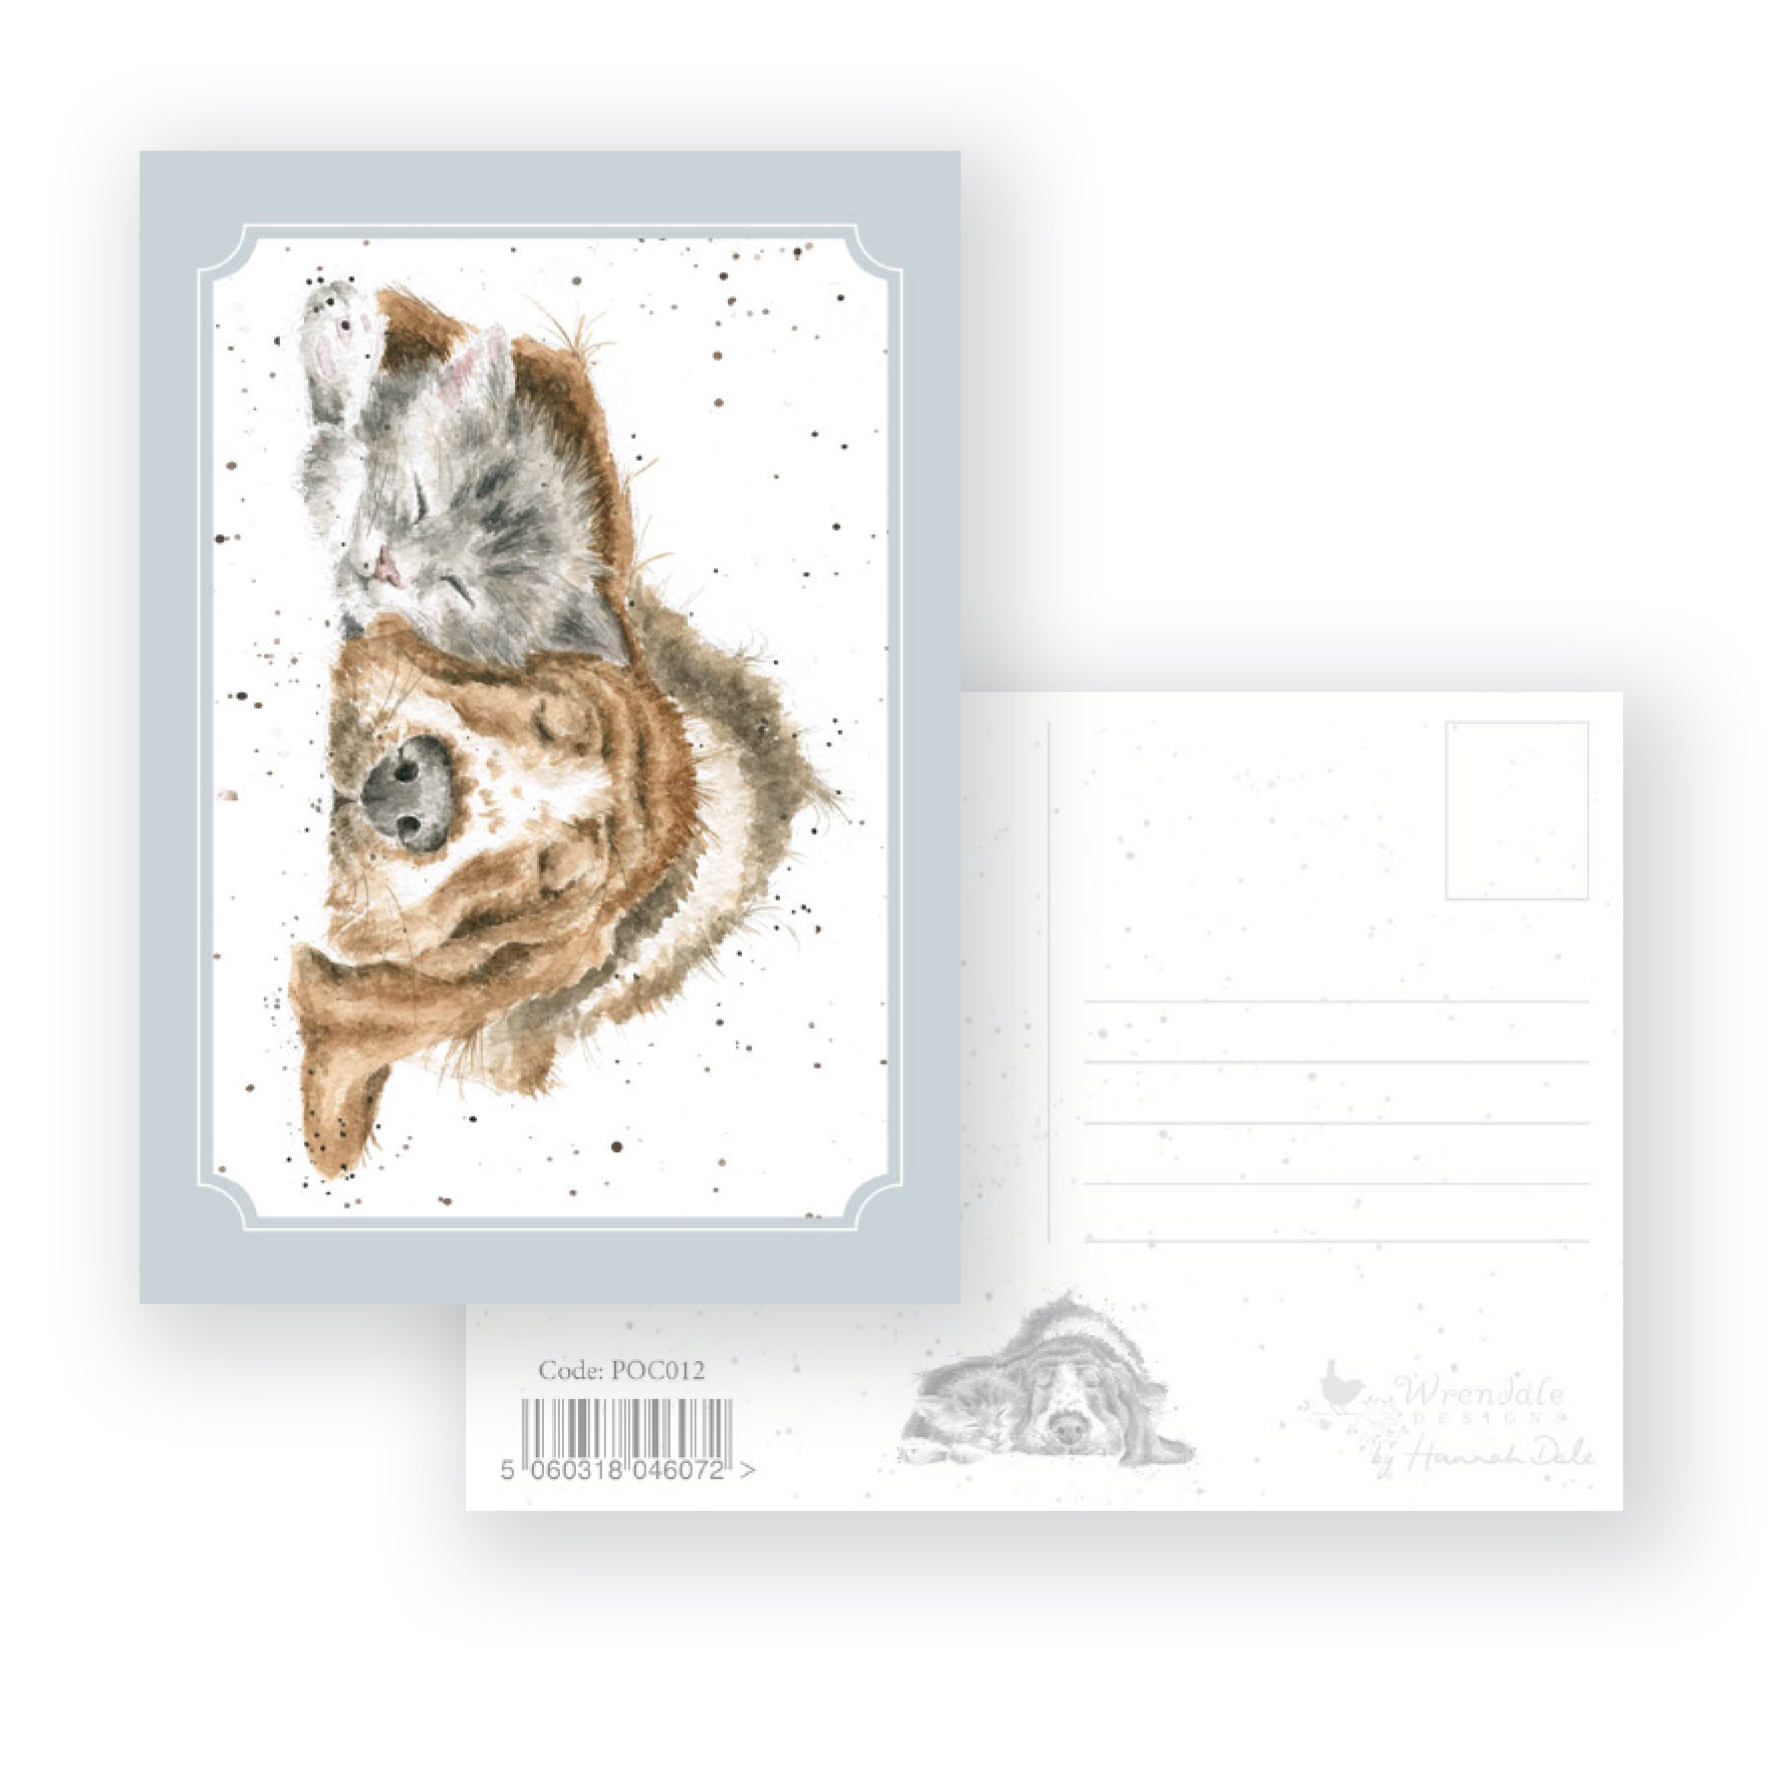 POC012 'Dog-and-Catnap' Postcard